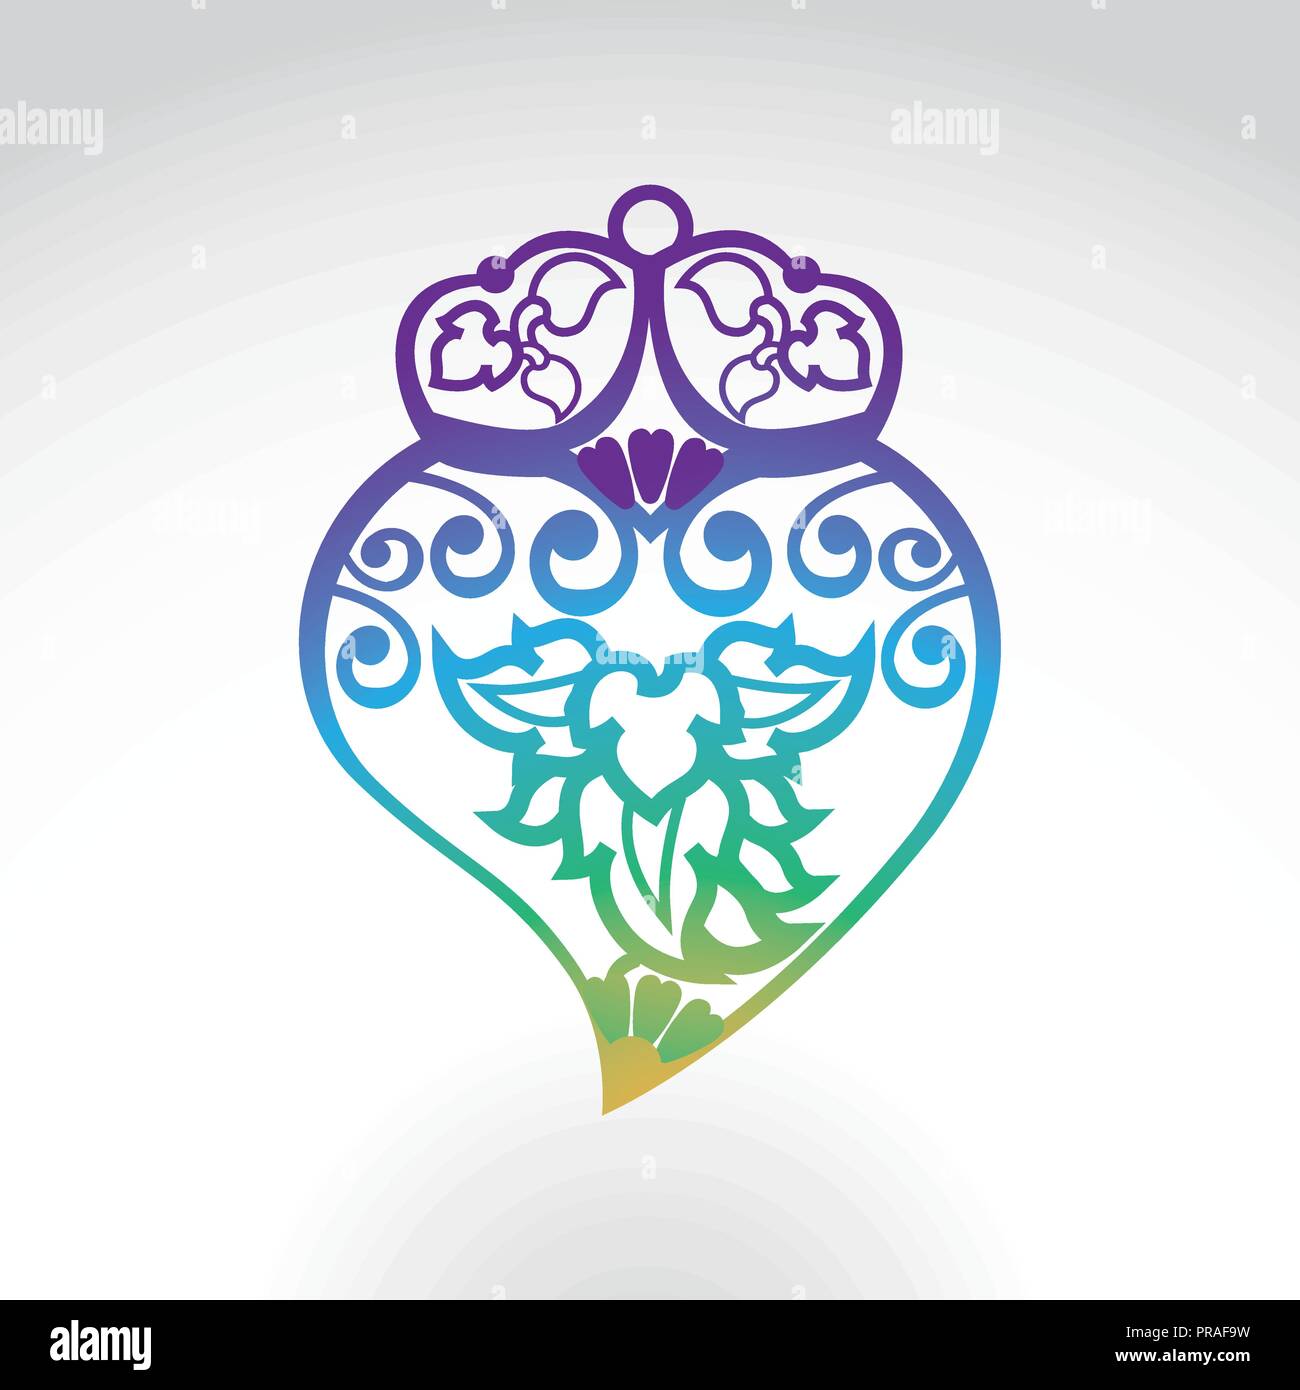 Viana Heart Gradient Colors Stock Vector Image & Art - Alamy